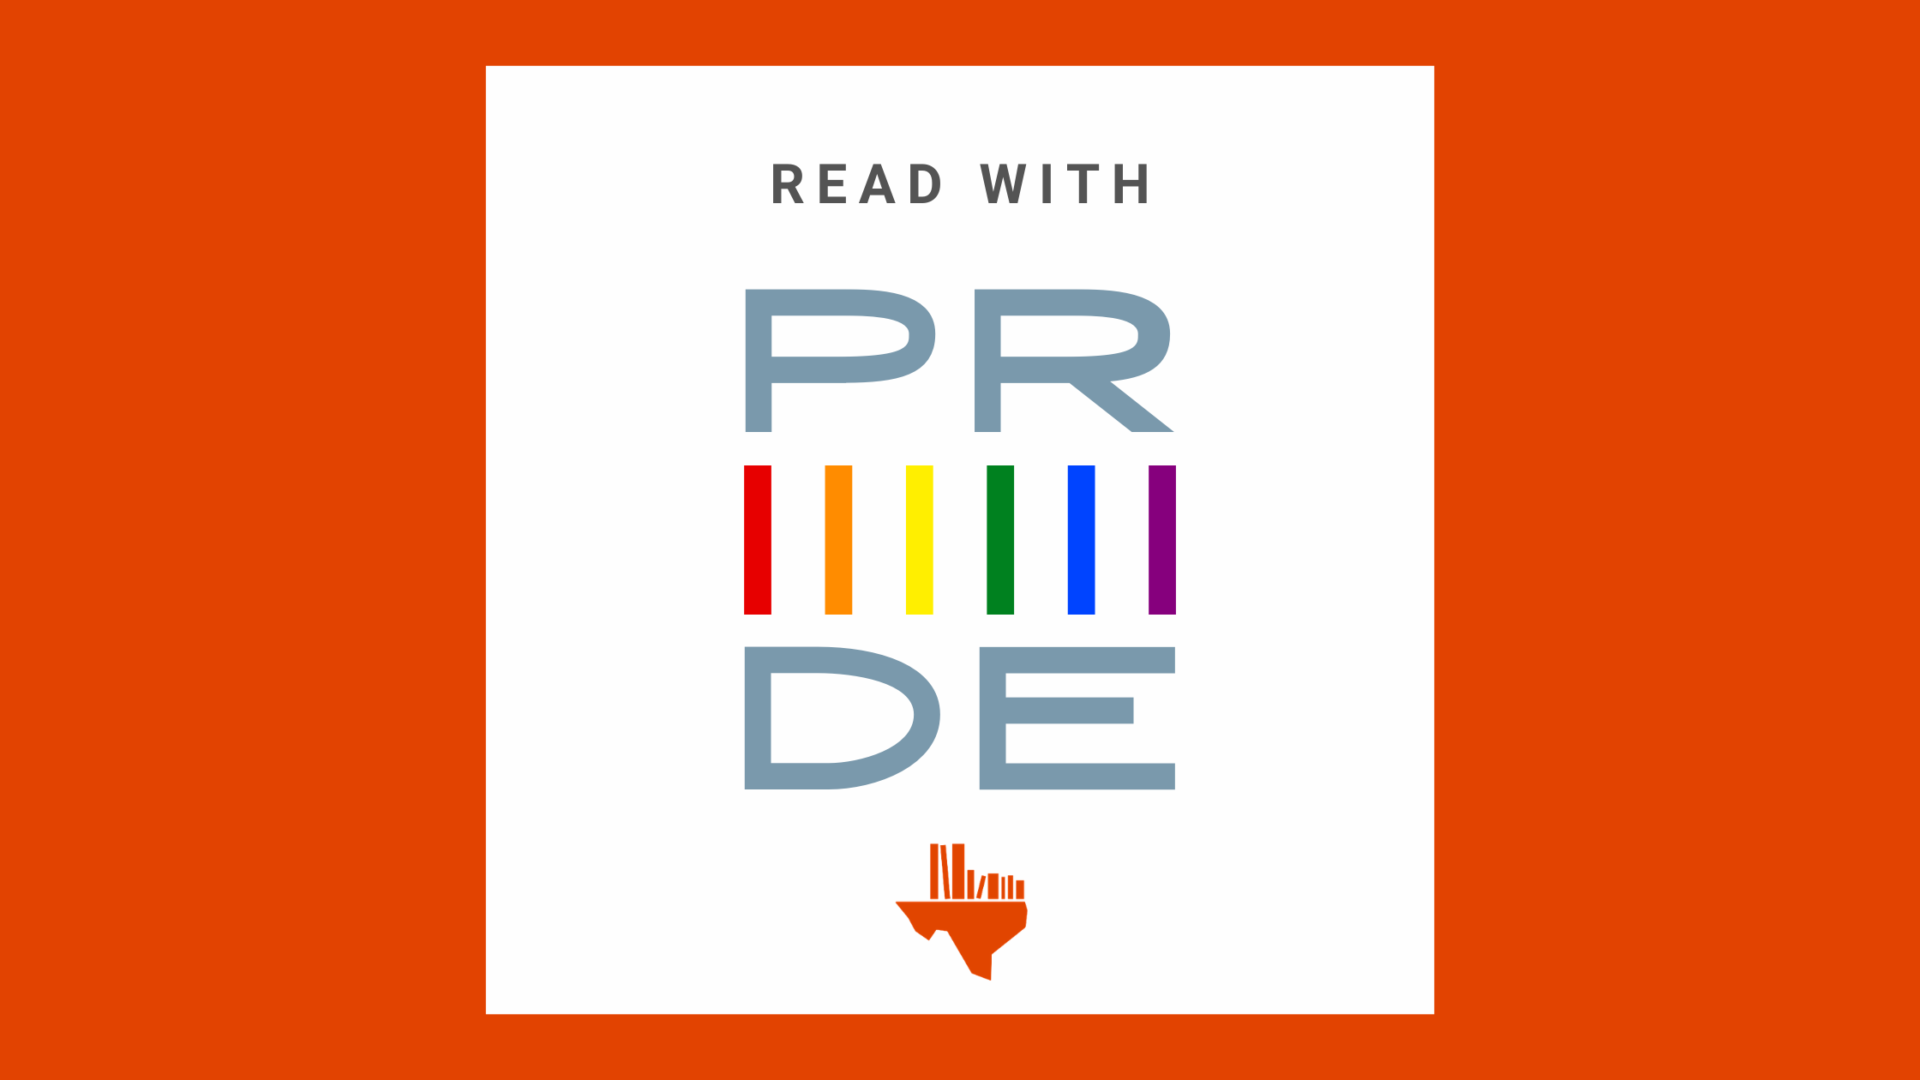 Celebrate Pride with Texas Book Festival